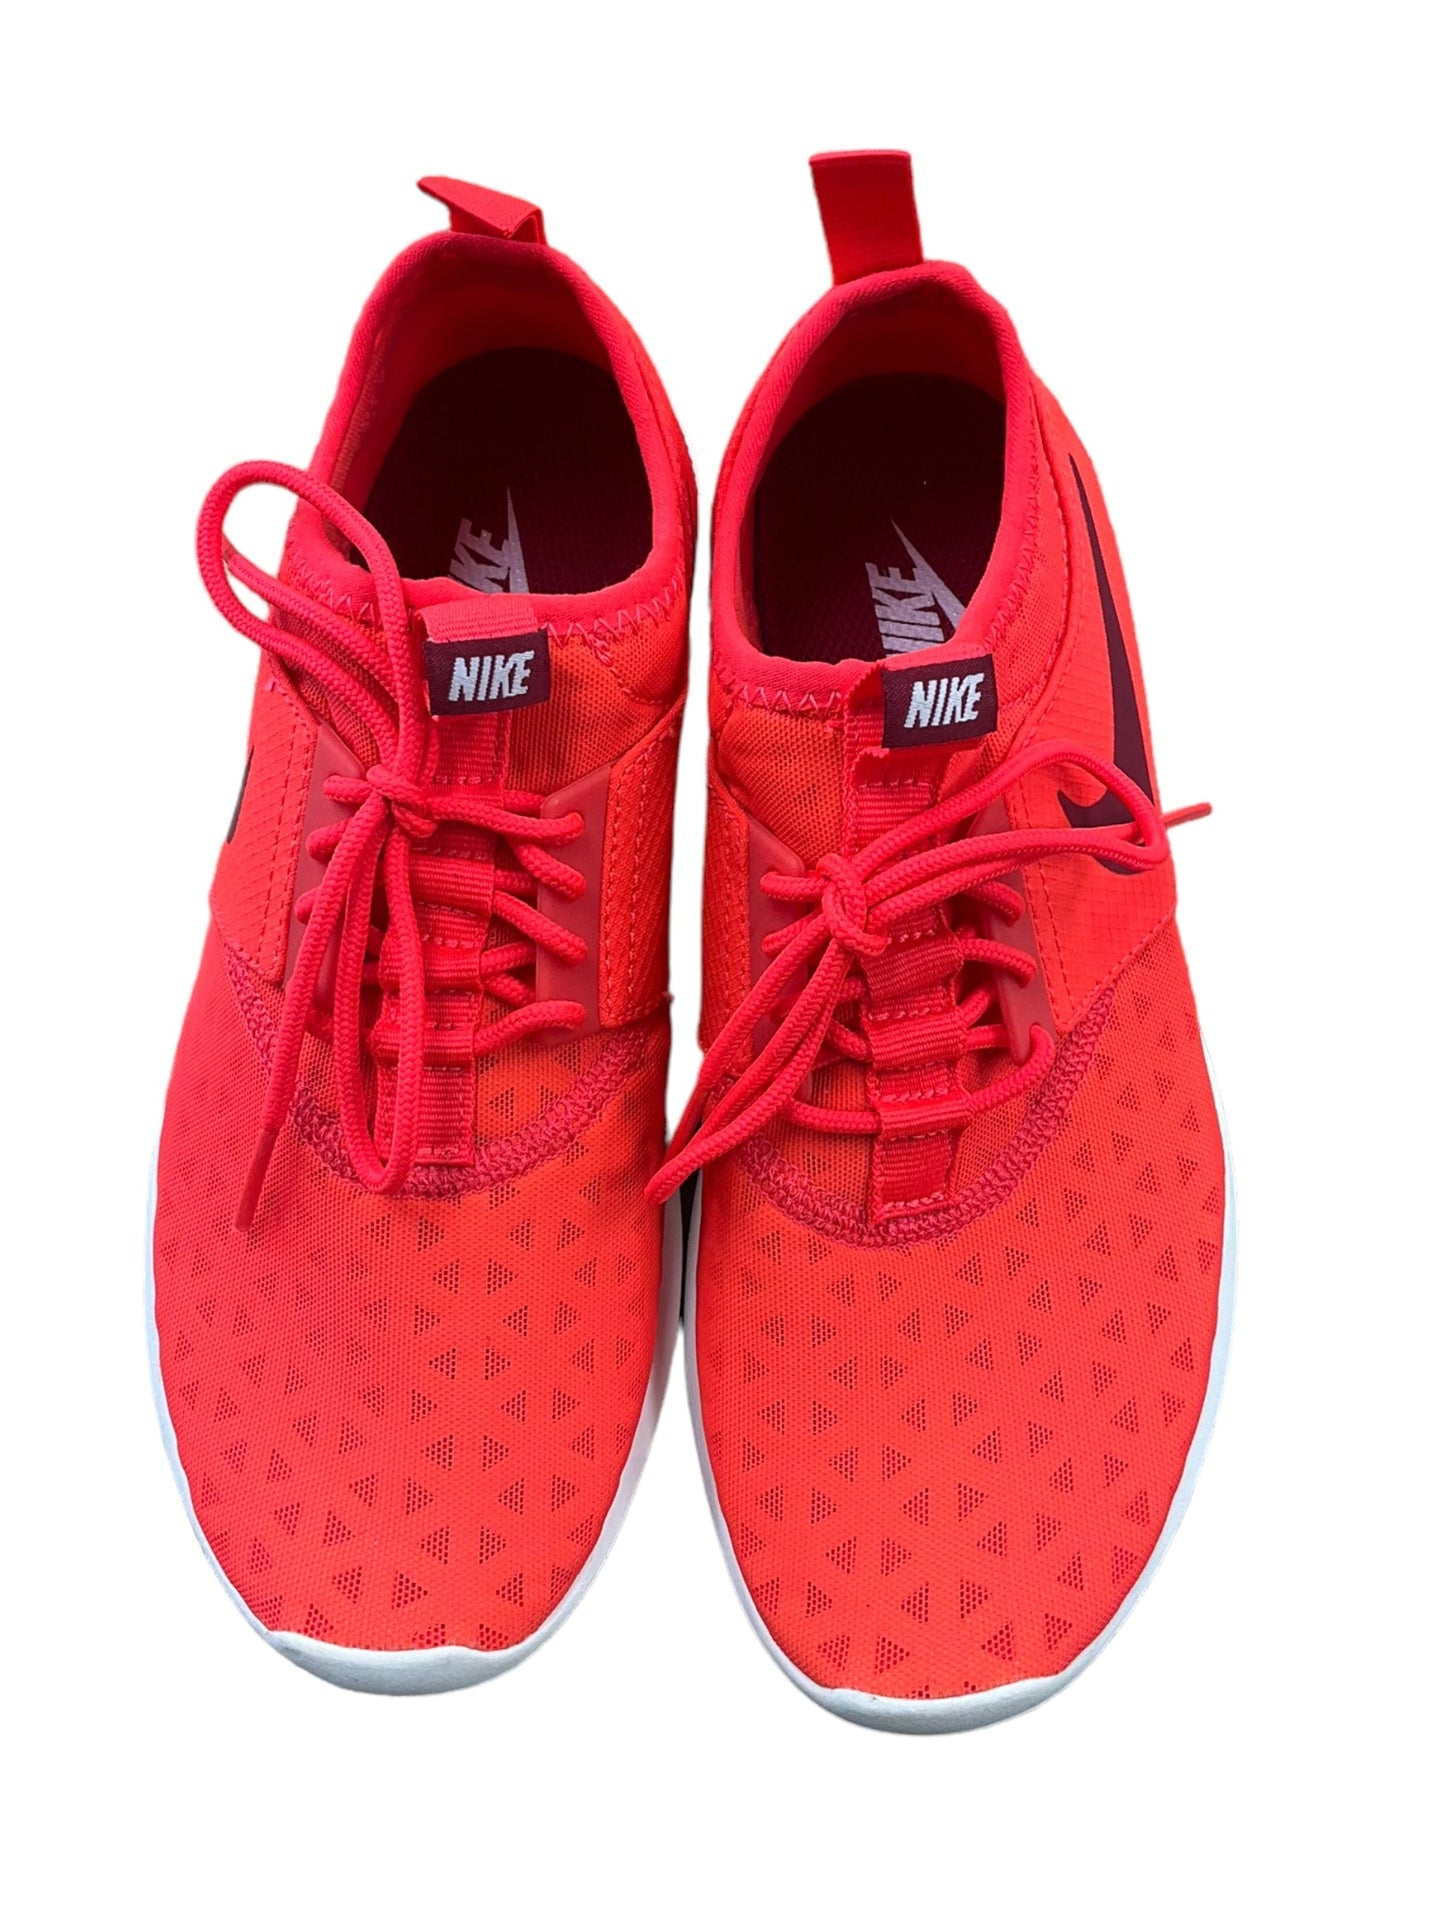 Orange Shoes Athletic Nike, Size 6.5